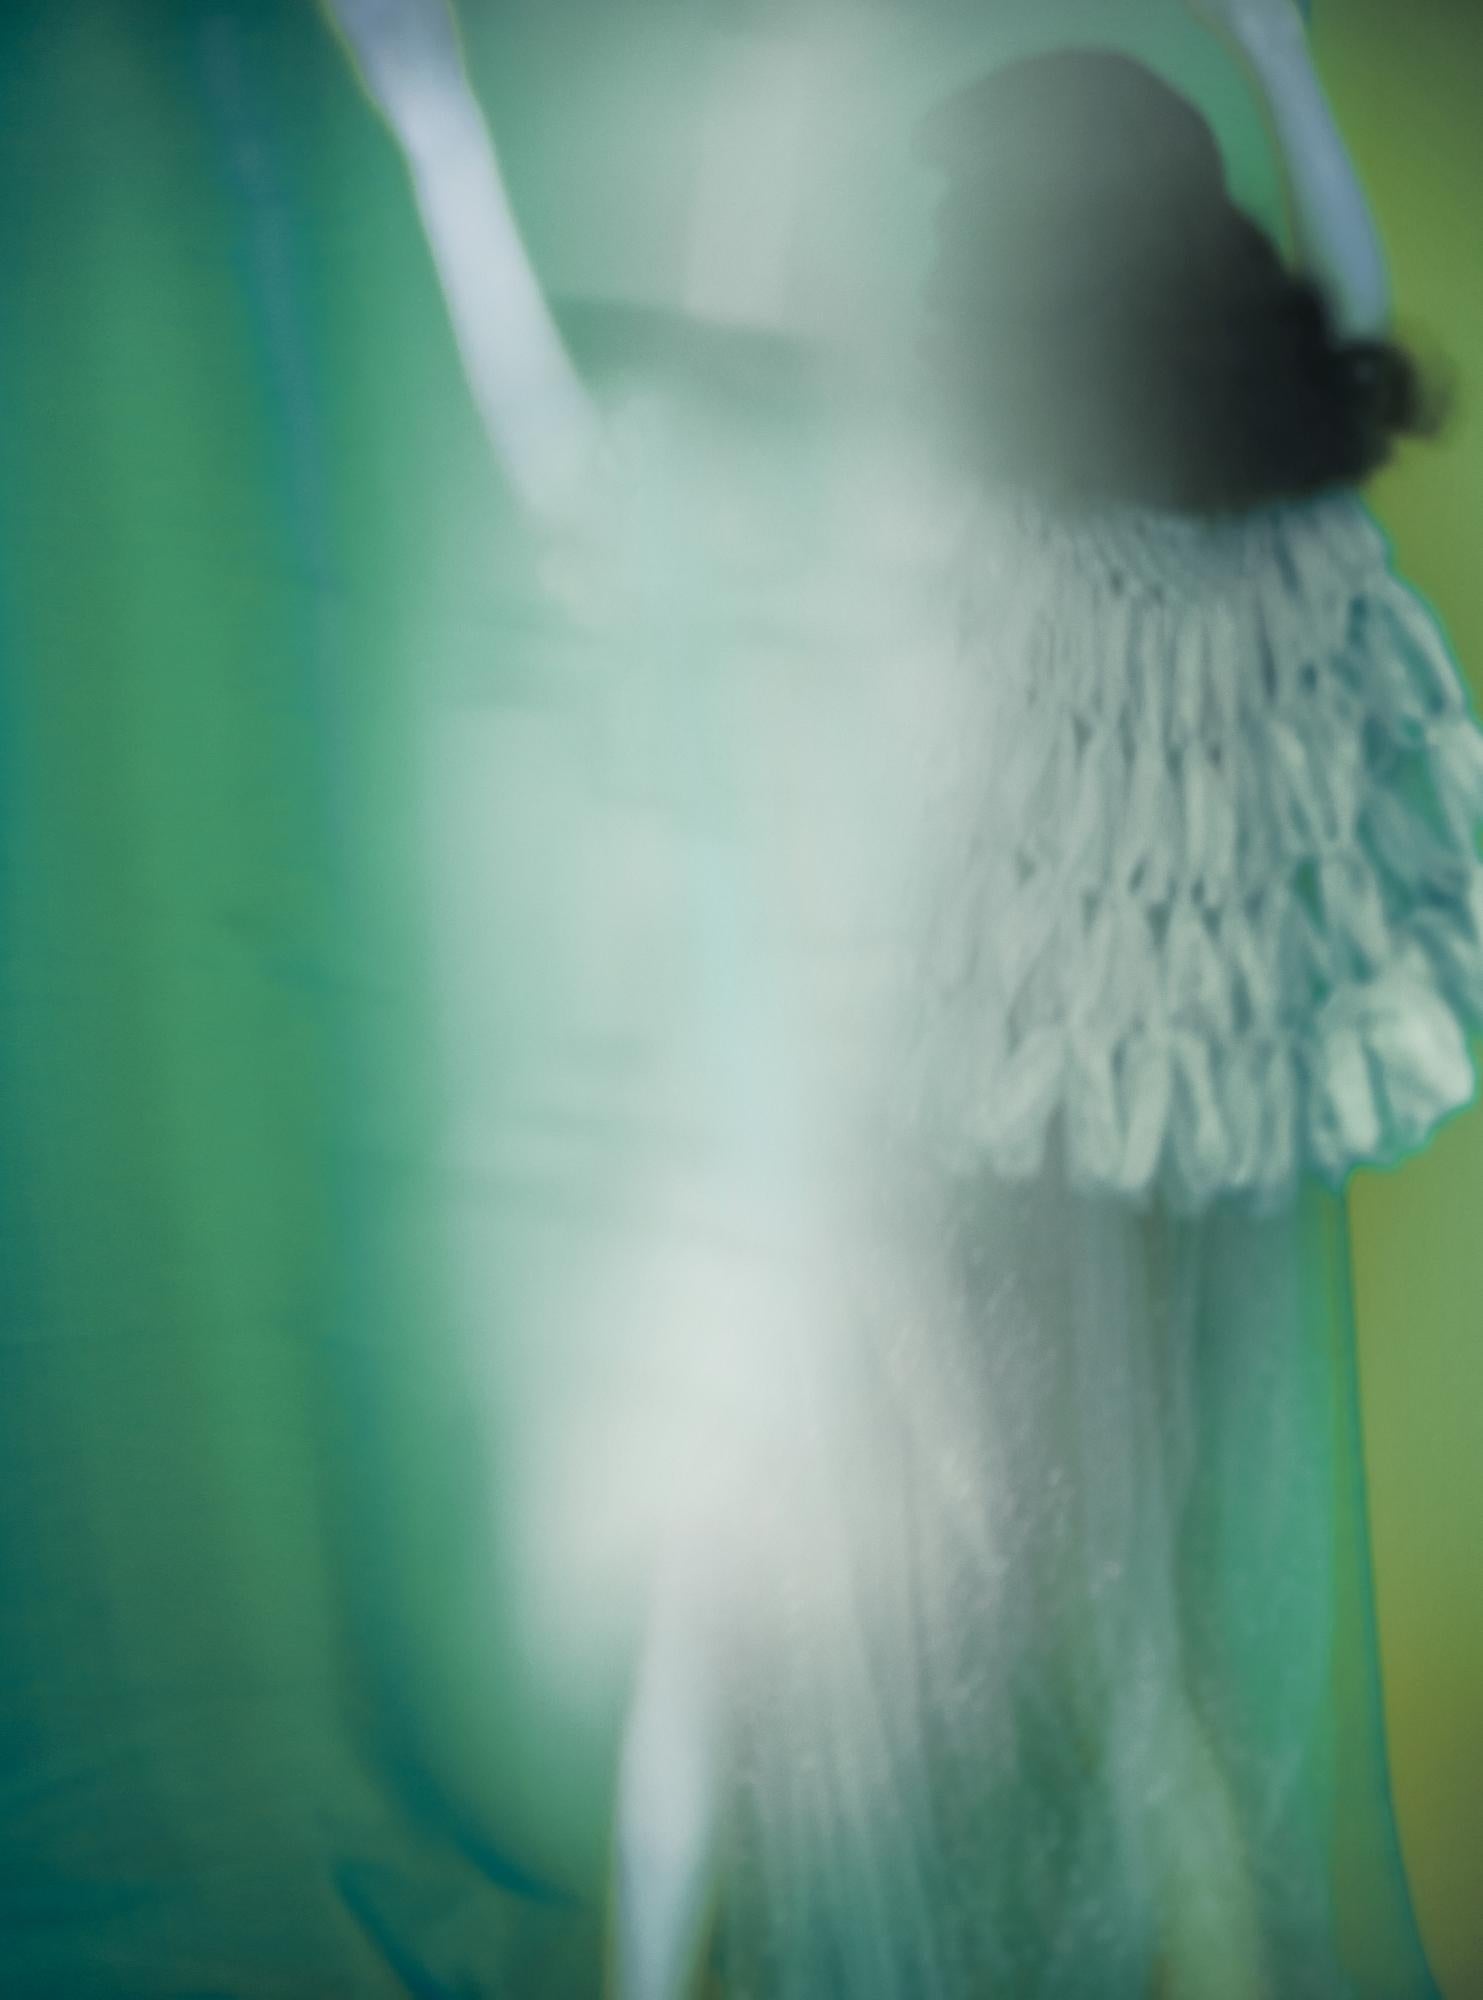 Not titled yet – Erik Madigan Heck, Fashion, Human, Art, Dress